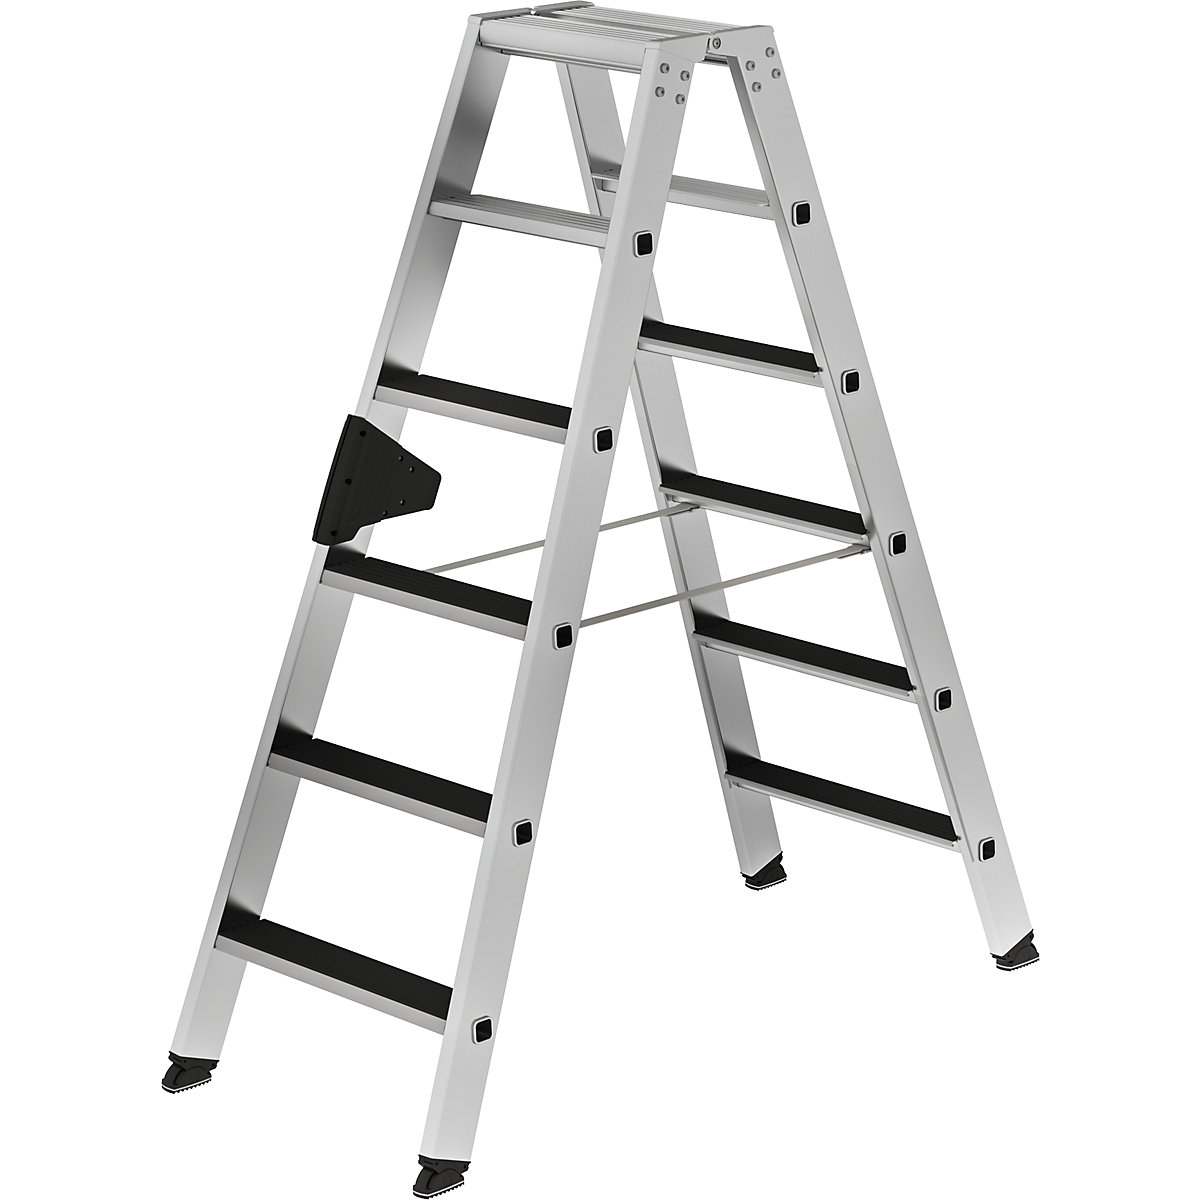 MUNK Stufen-Stehleiter CLIP-STEP, beidseitig begehbar, geriffelt, 2 x 6 Stufen